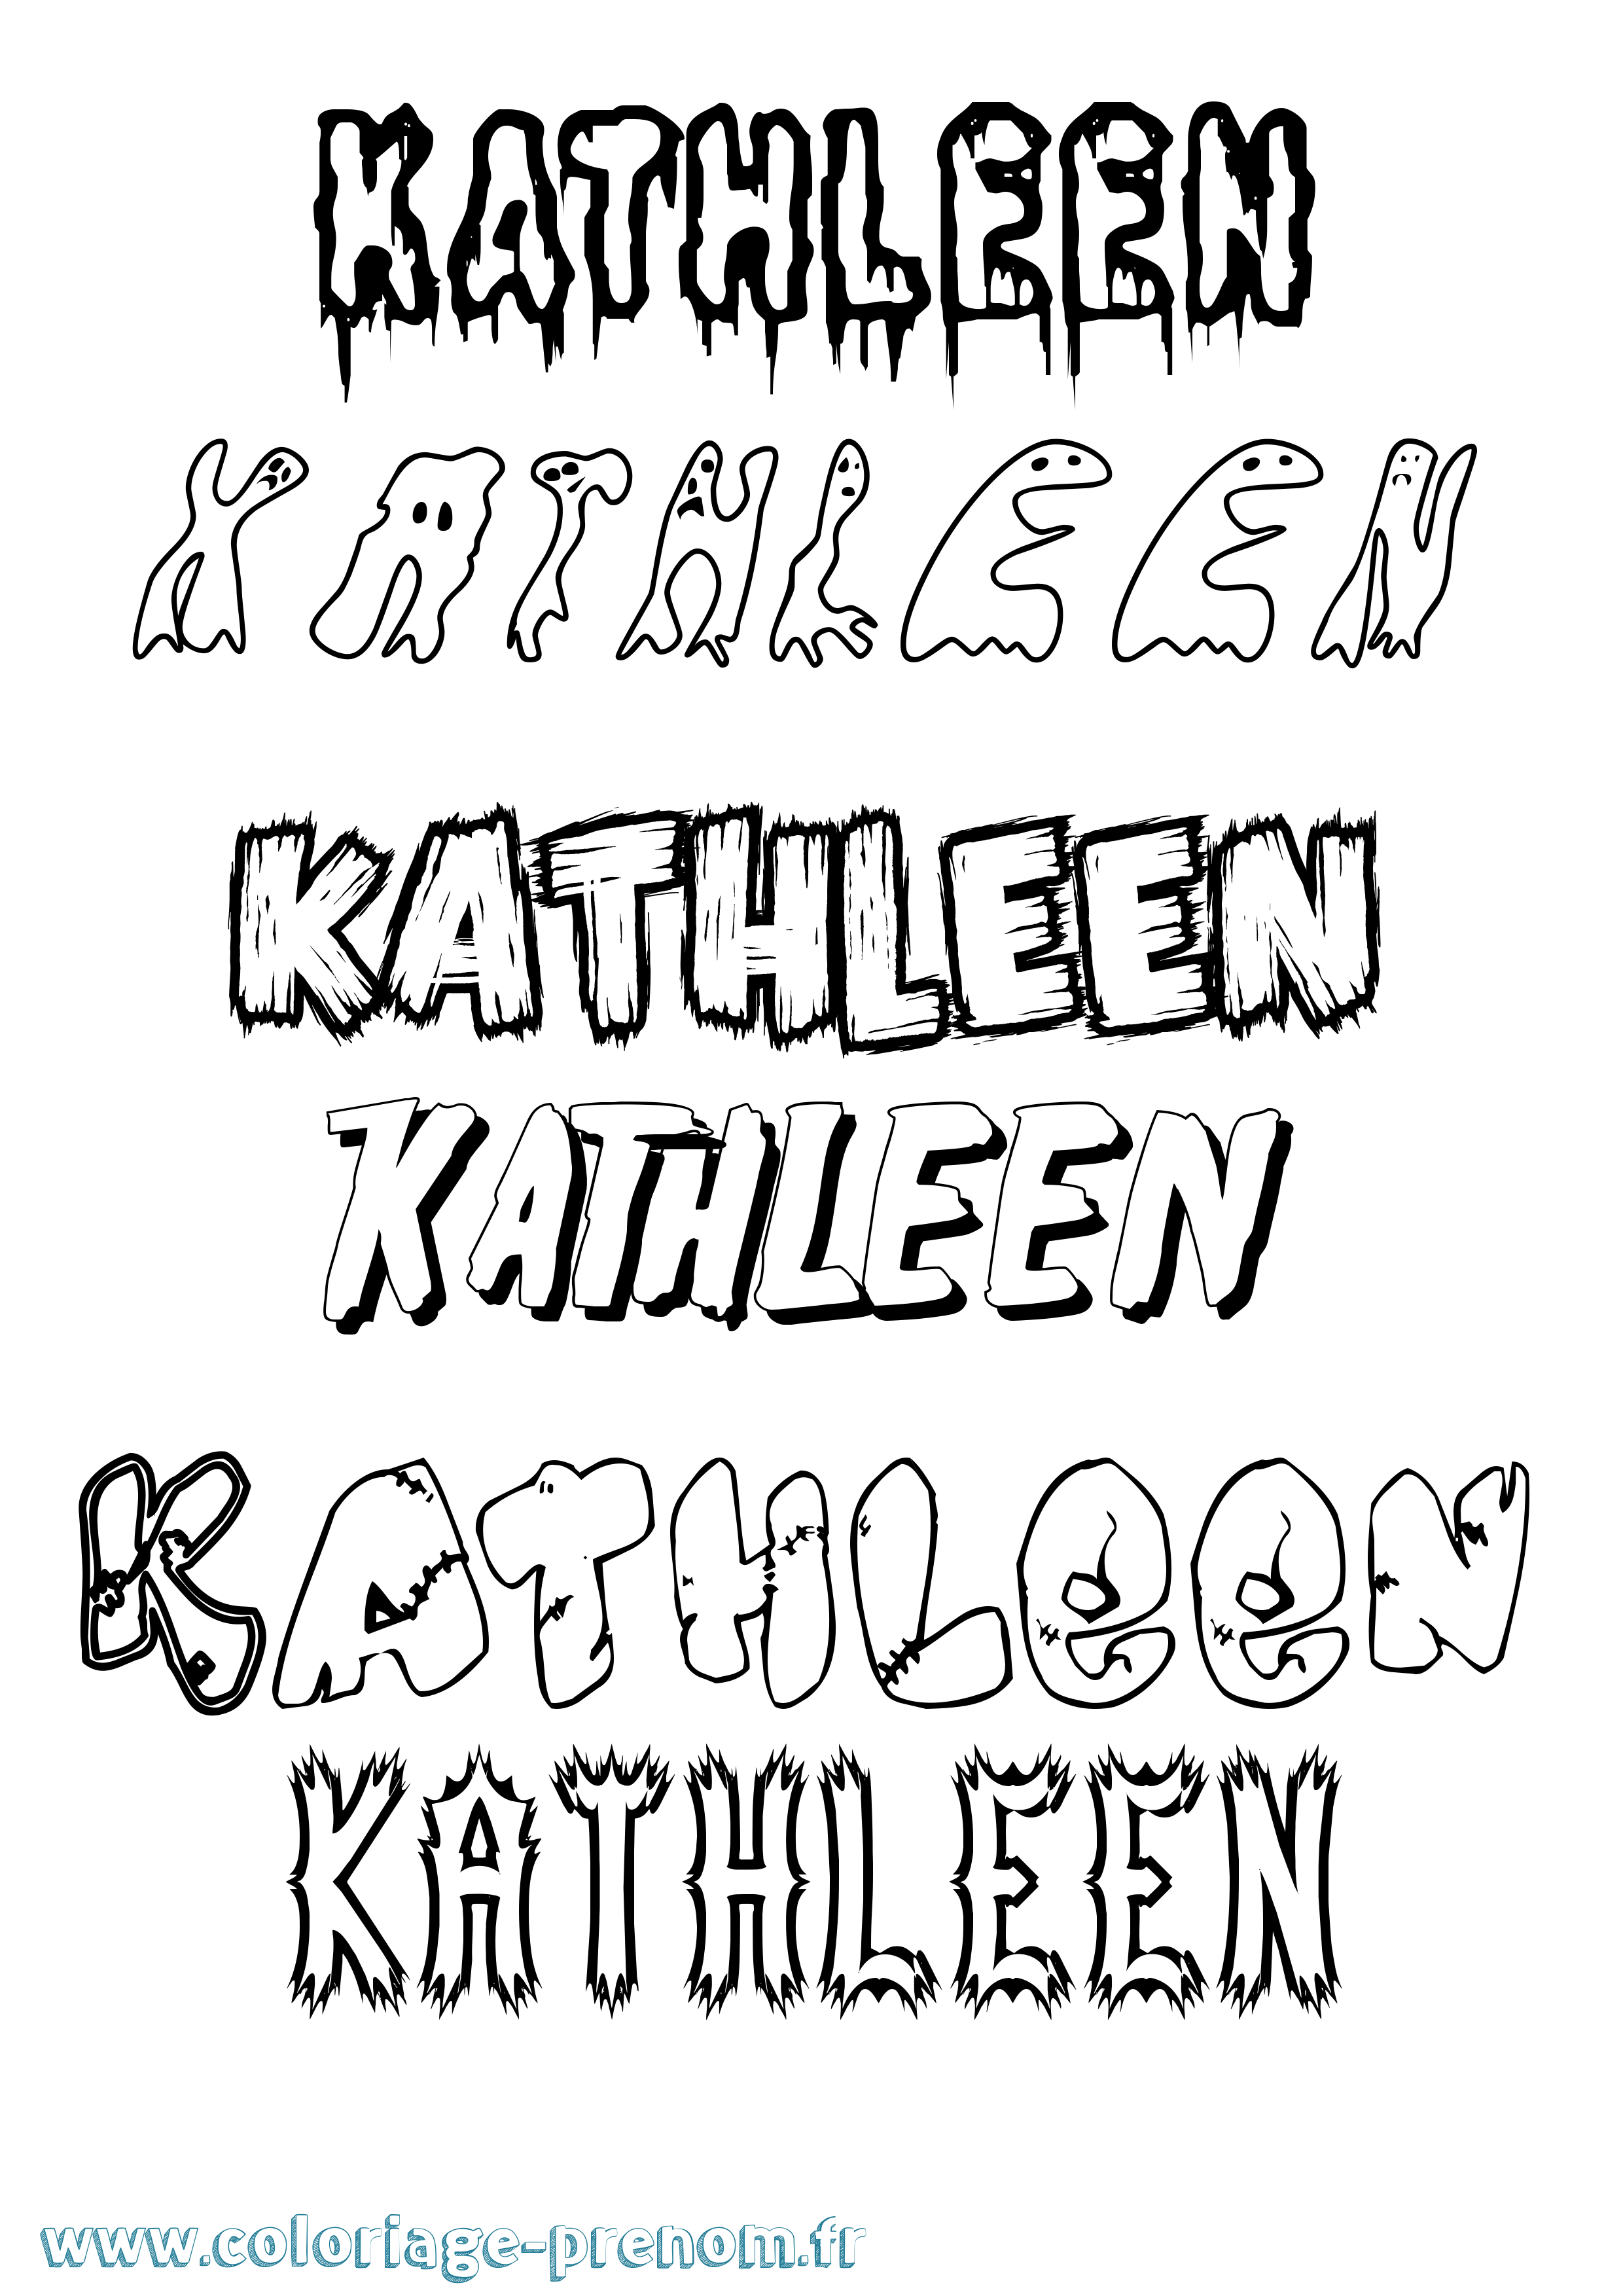 Coloriage prénom Kathleen Frisson